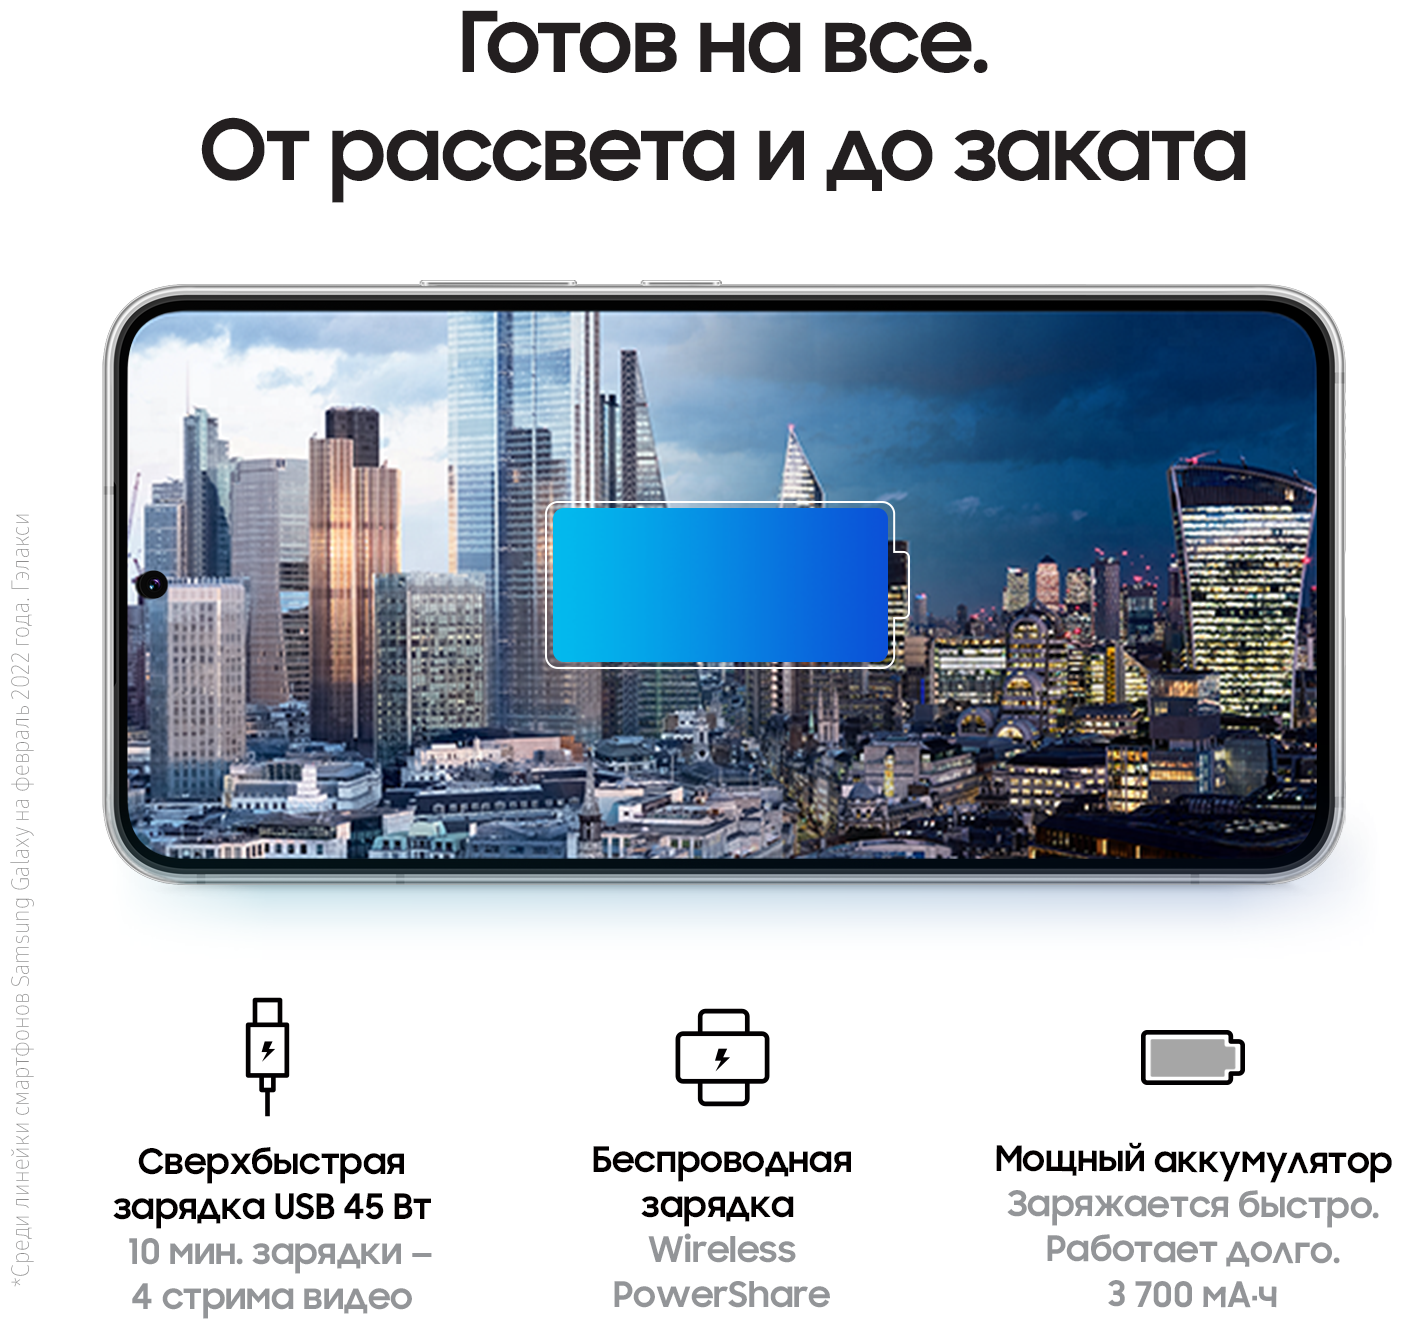 Samsung galaxy a8 – шустрый смартфон для любителей селфи